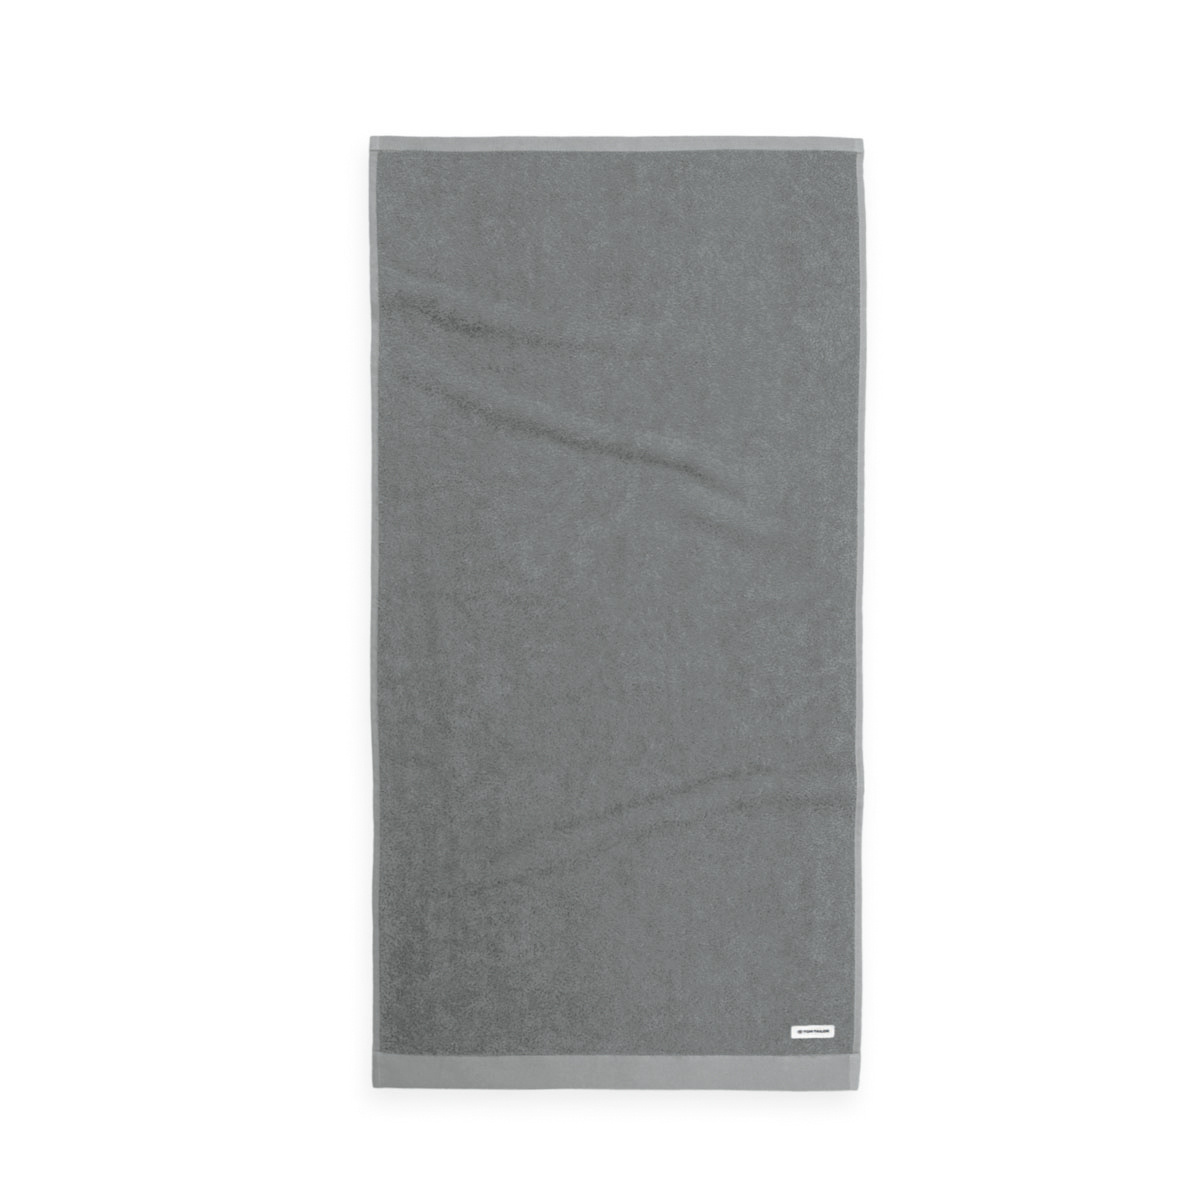 Tom Tailor Moody Grey törölköző, 50 x 100 cm